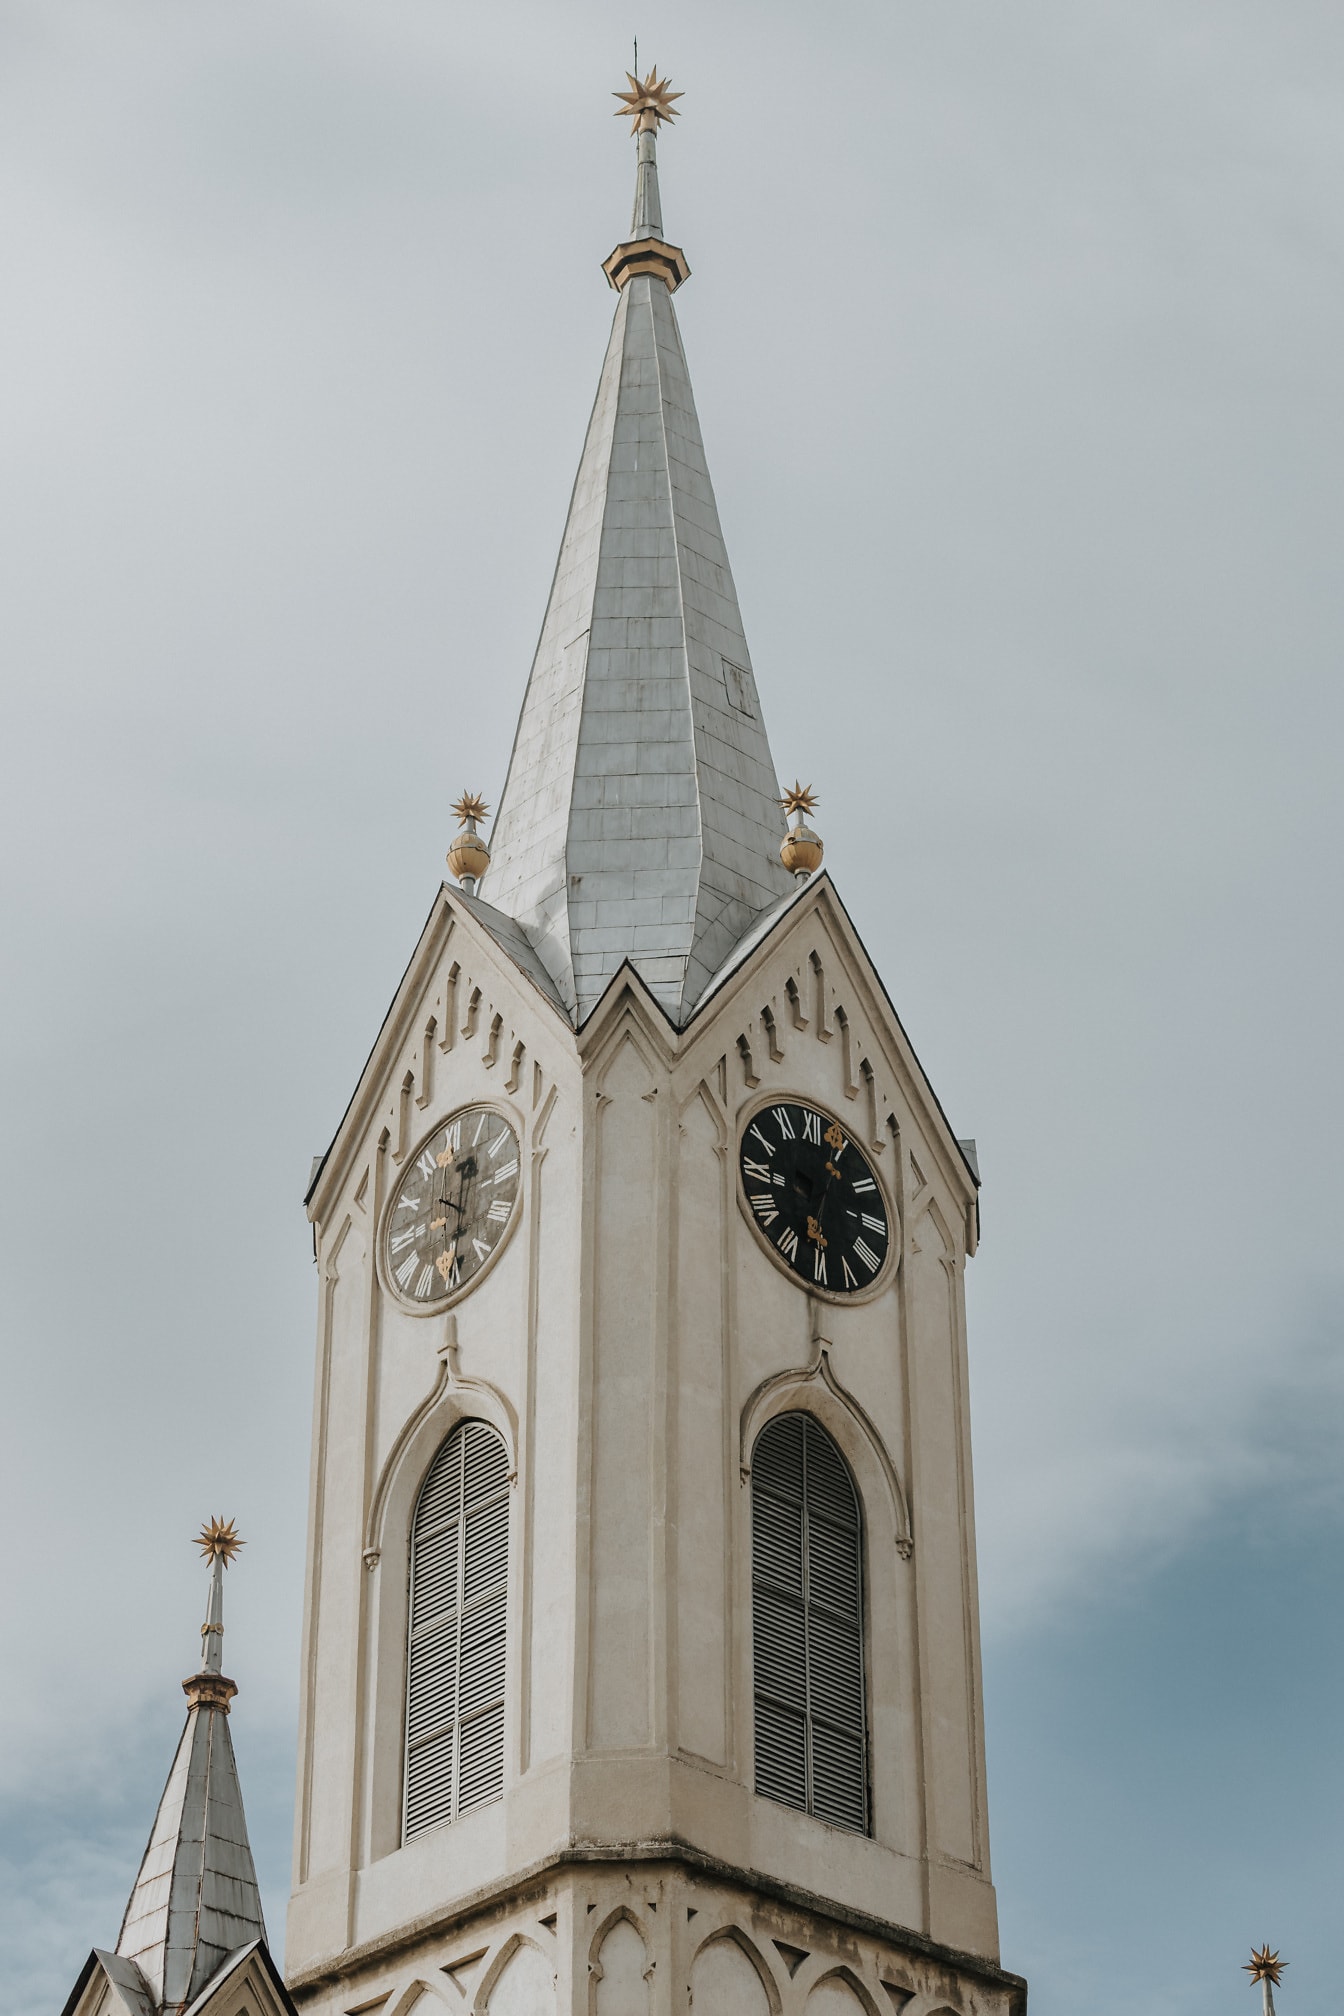 Torre de la iglesia cristiana de la reforma con reloj analógico